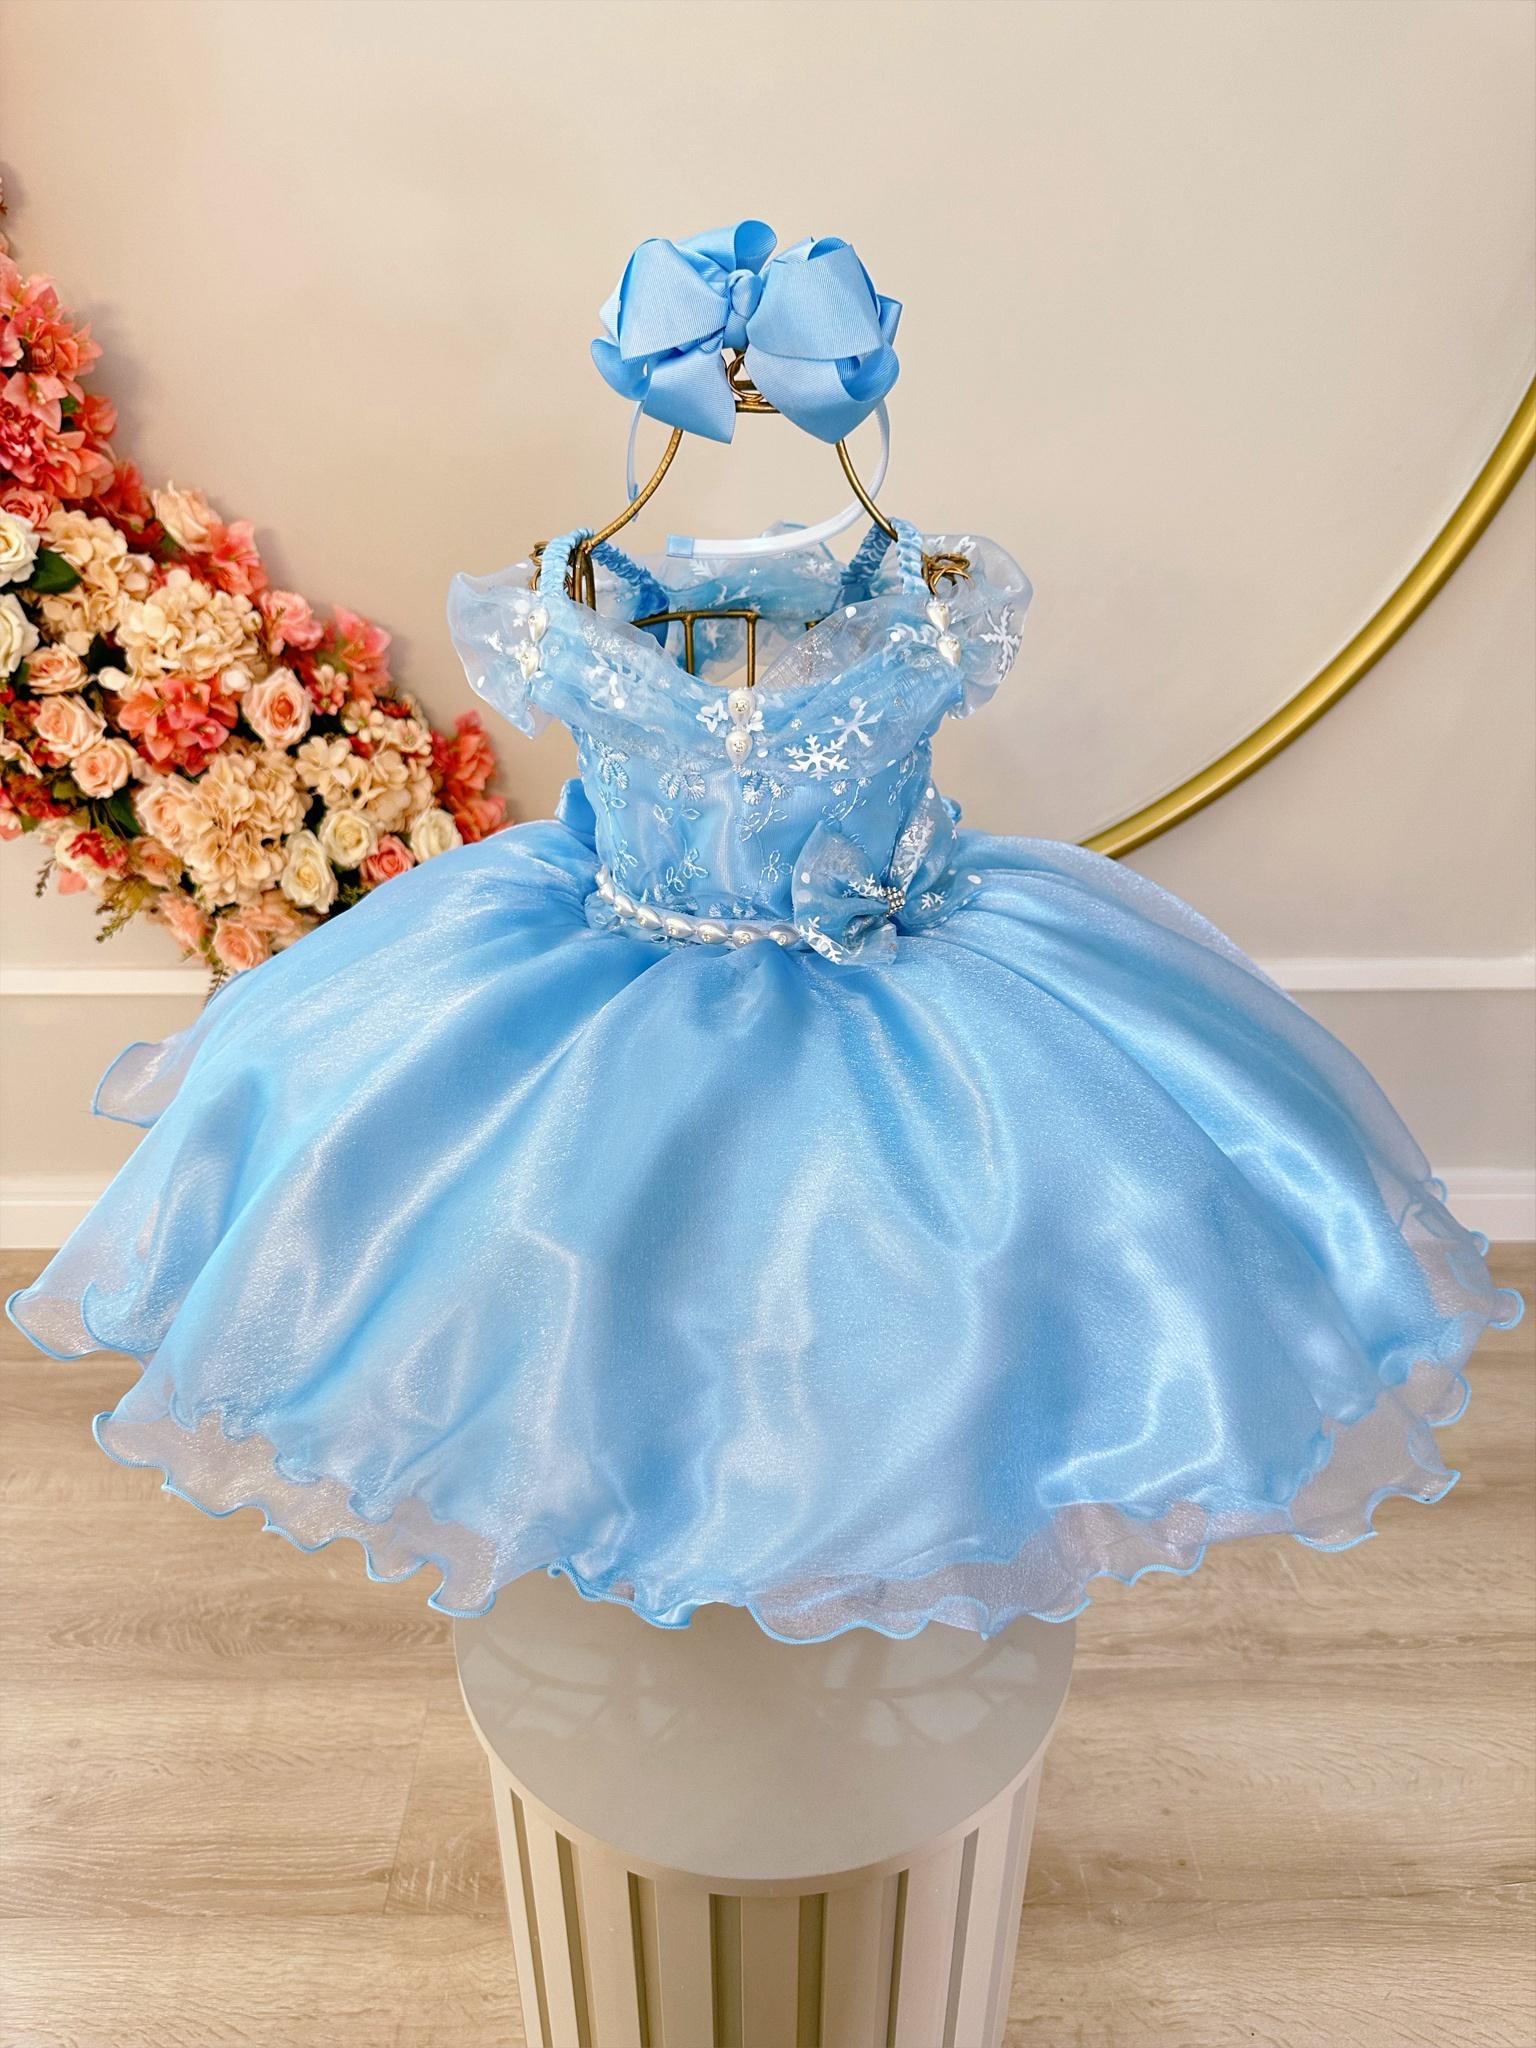 Vestido Infantil Frozen C/ Capa e Laço Princesas Luxo Festas